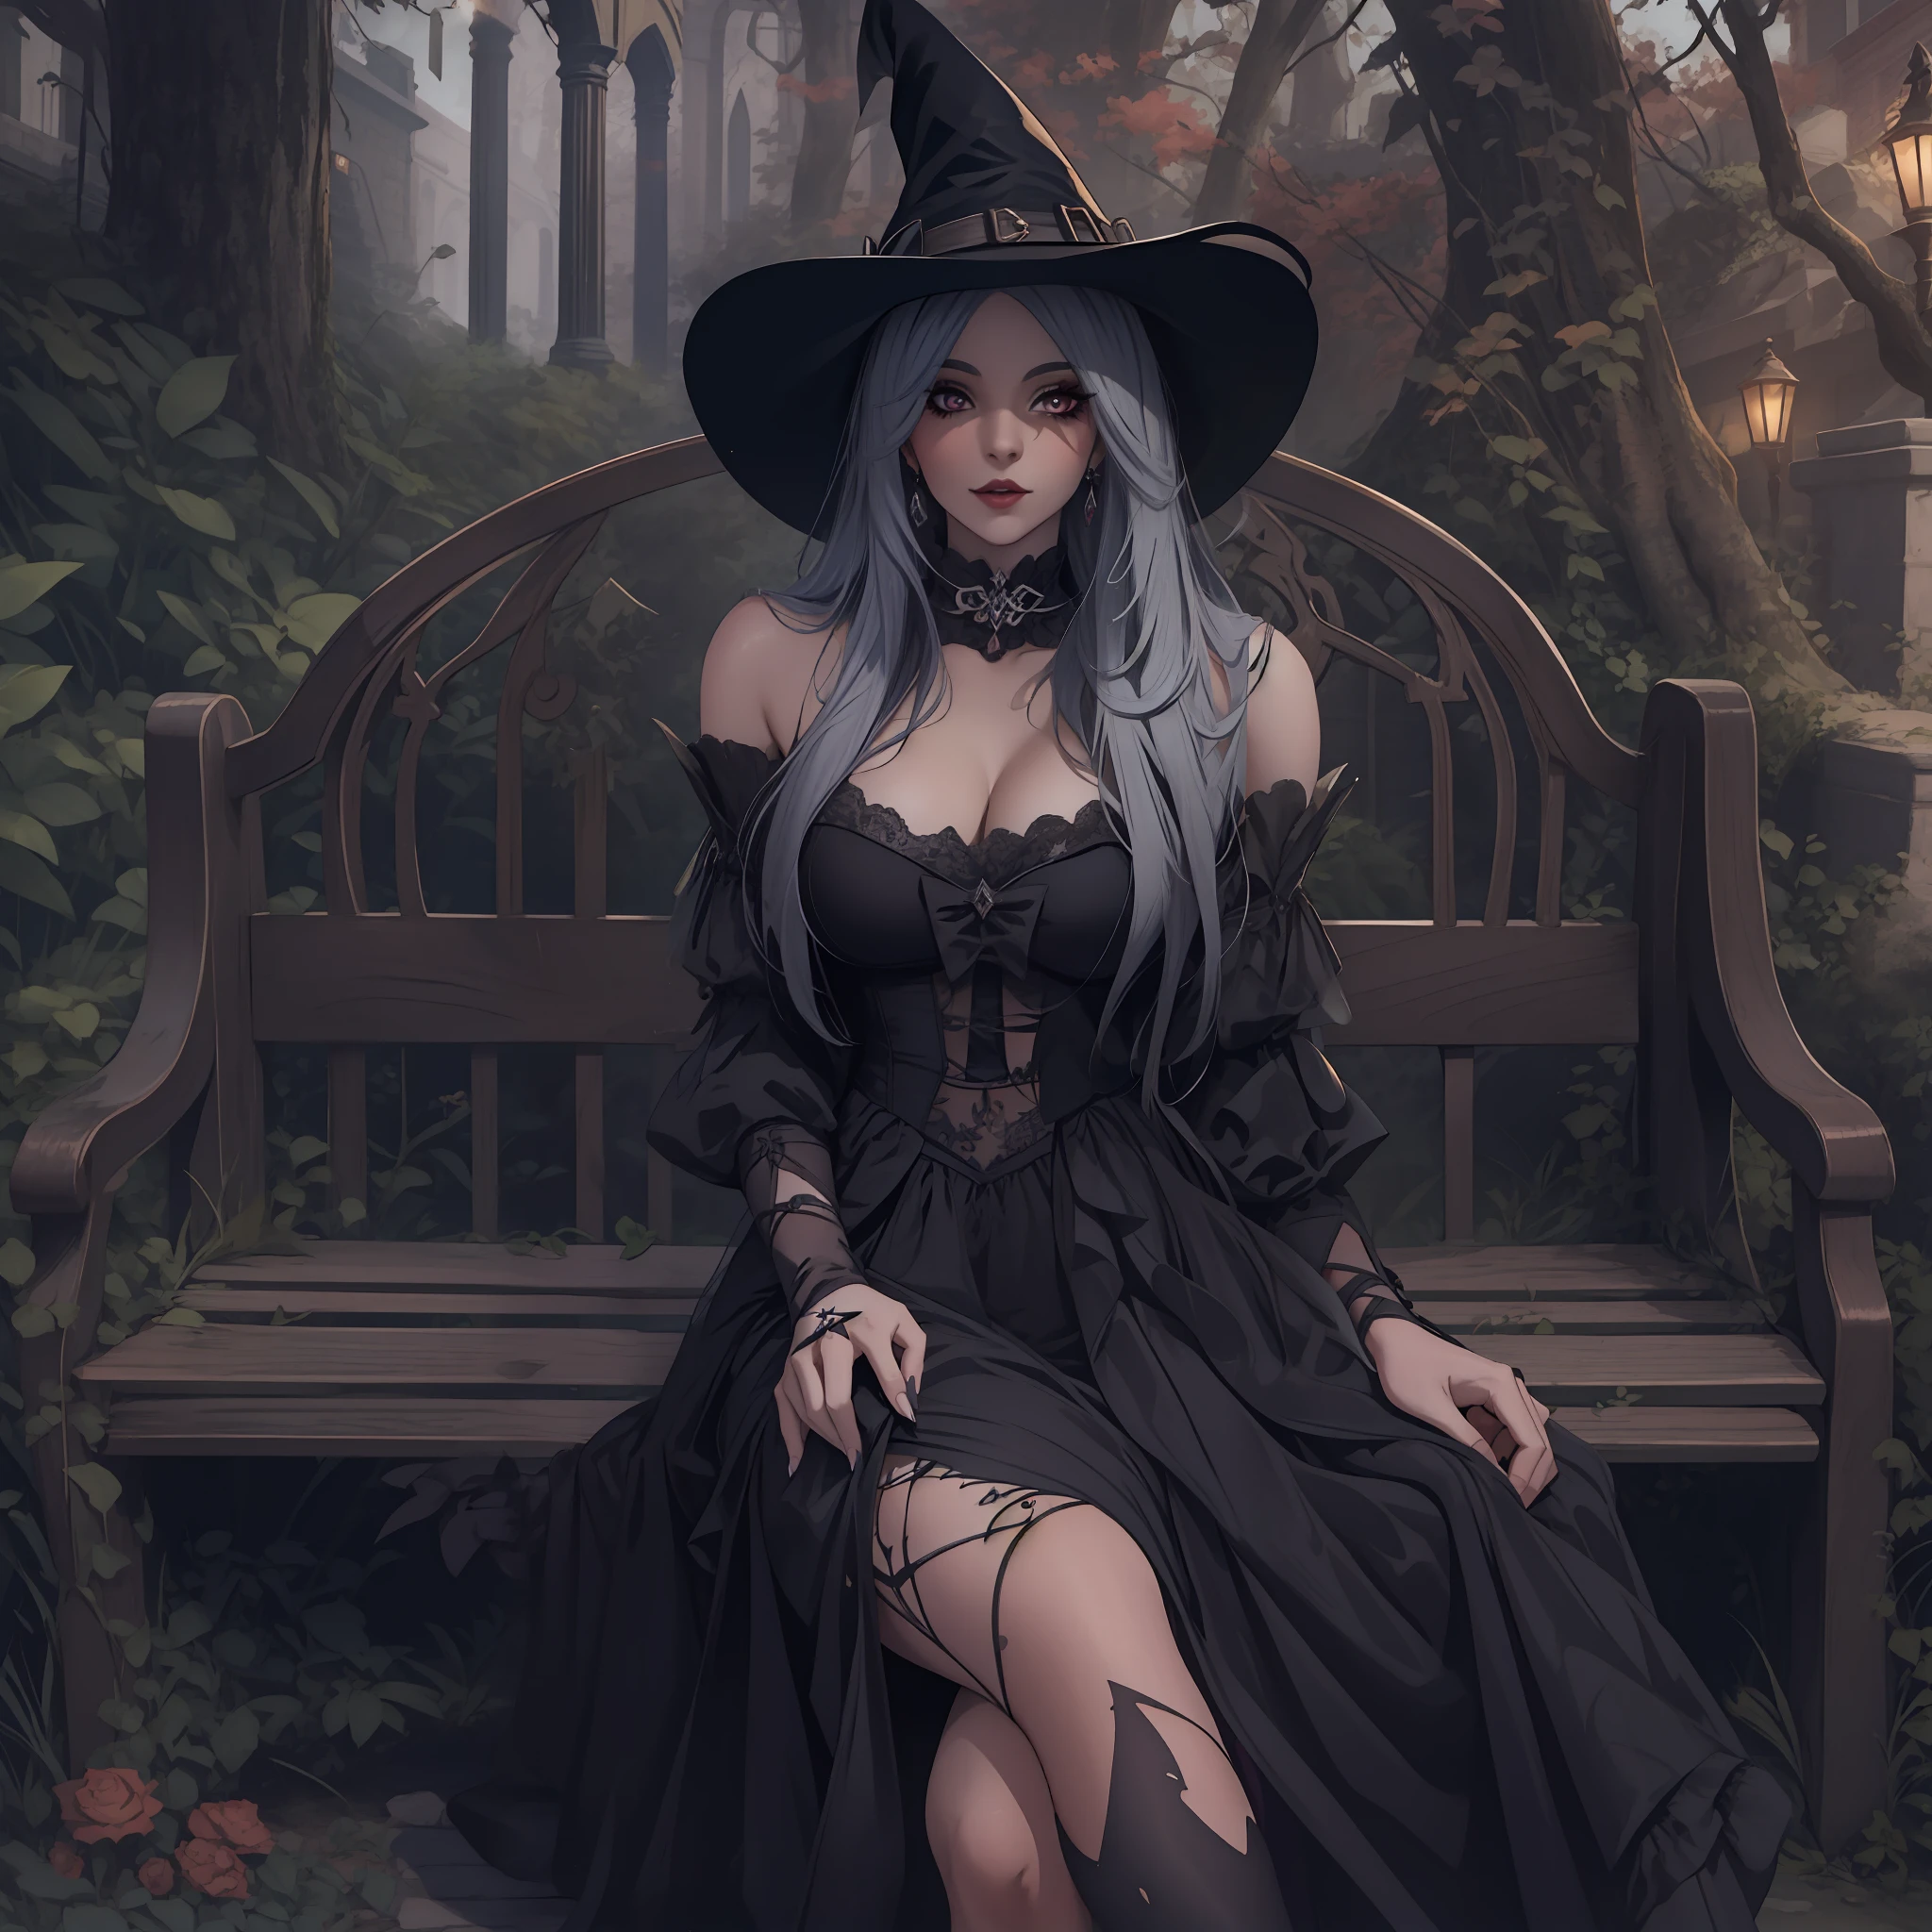 穿着黑色连衣裙和帽子坐在长凳上的女巫, 一个美丽的女巫, 美丽的女巫, 美丽的女巫, 美丽的女巫, 美丽的女巫, 杰西卡·布莱克, 古典女巫, 巫术, 美丽的牛仔女巫, 黑暗女巫, 时尚黑暗女巫,  死灵法师博尼塔, 恶魔城女巫, 美丽的女巫